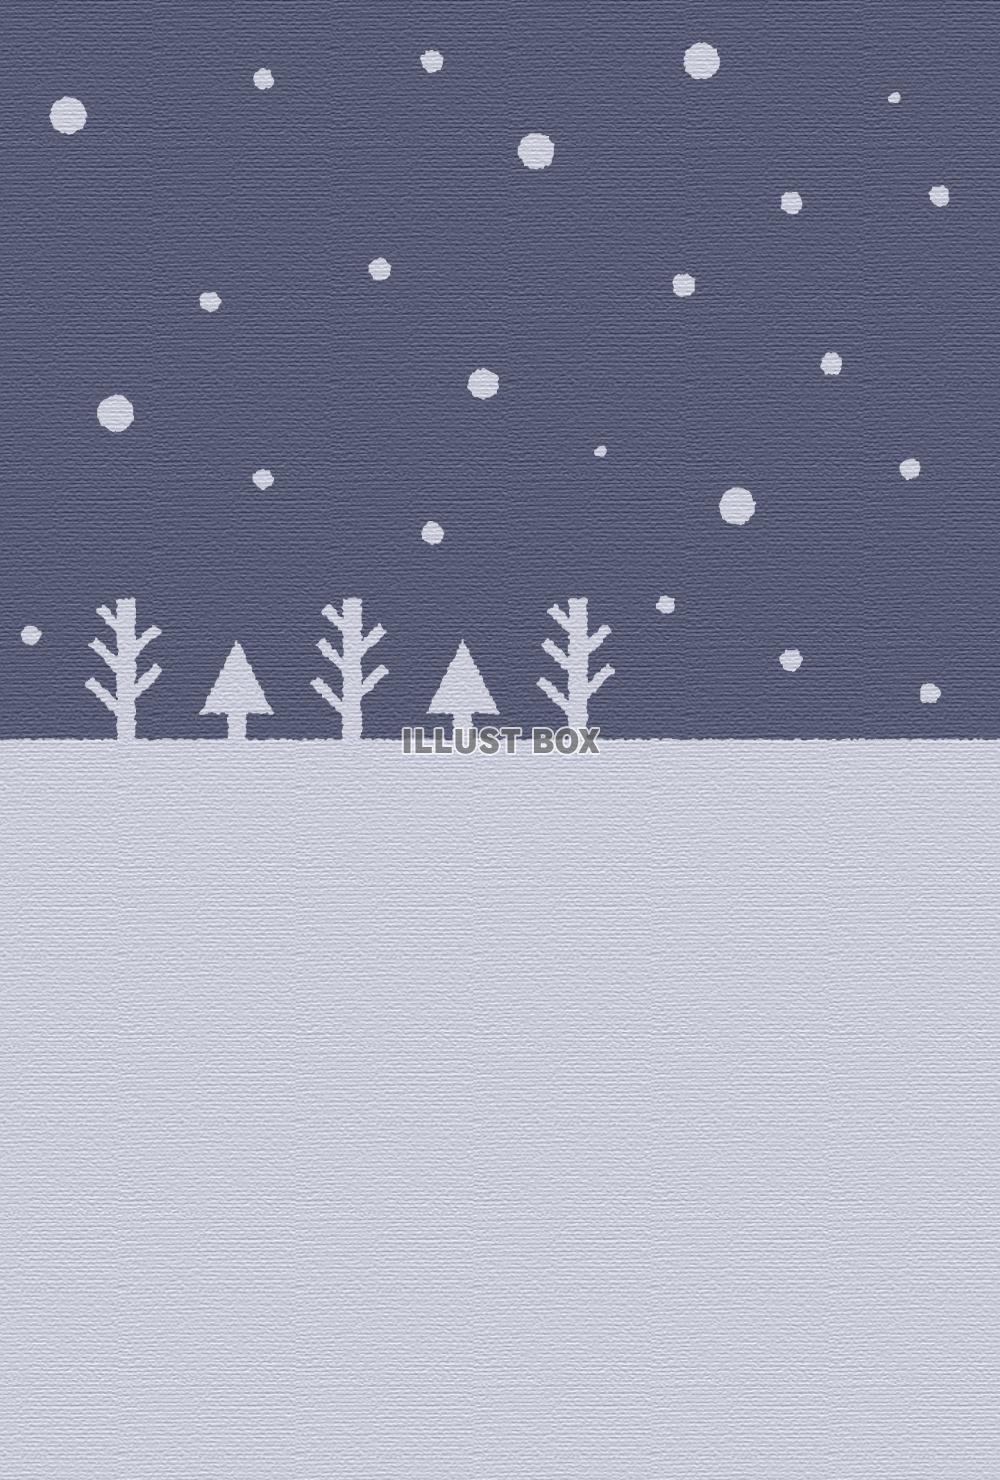 シンプルな降雪の風景のイラスト